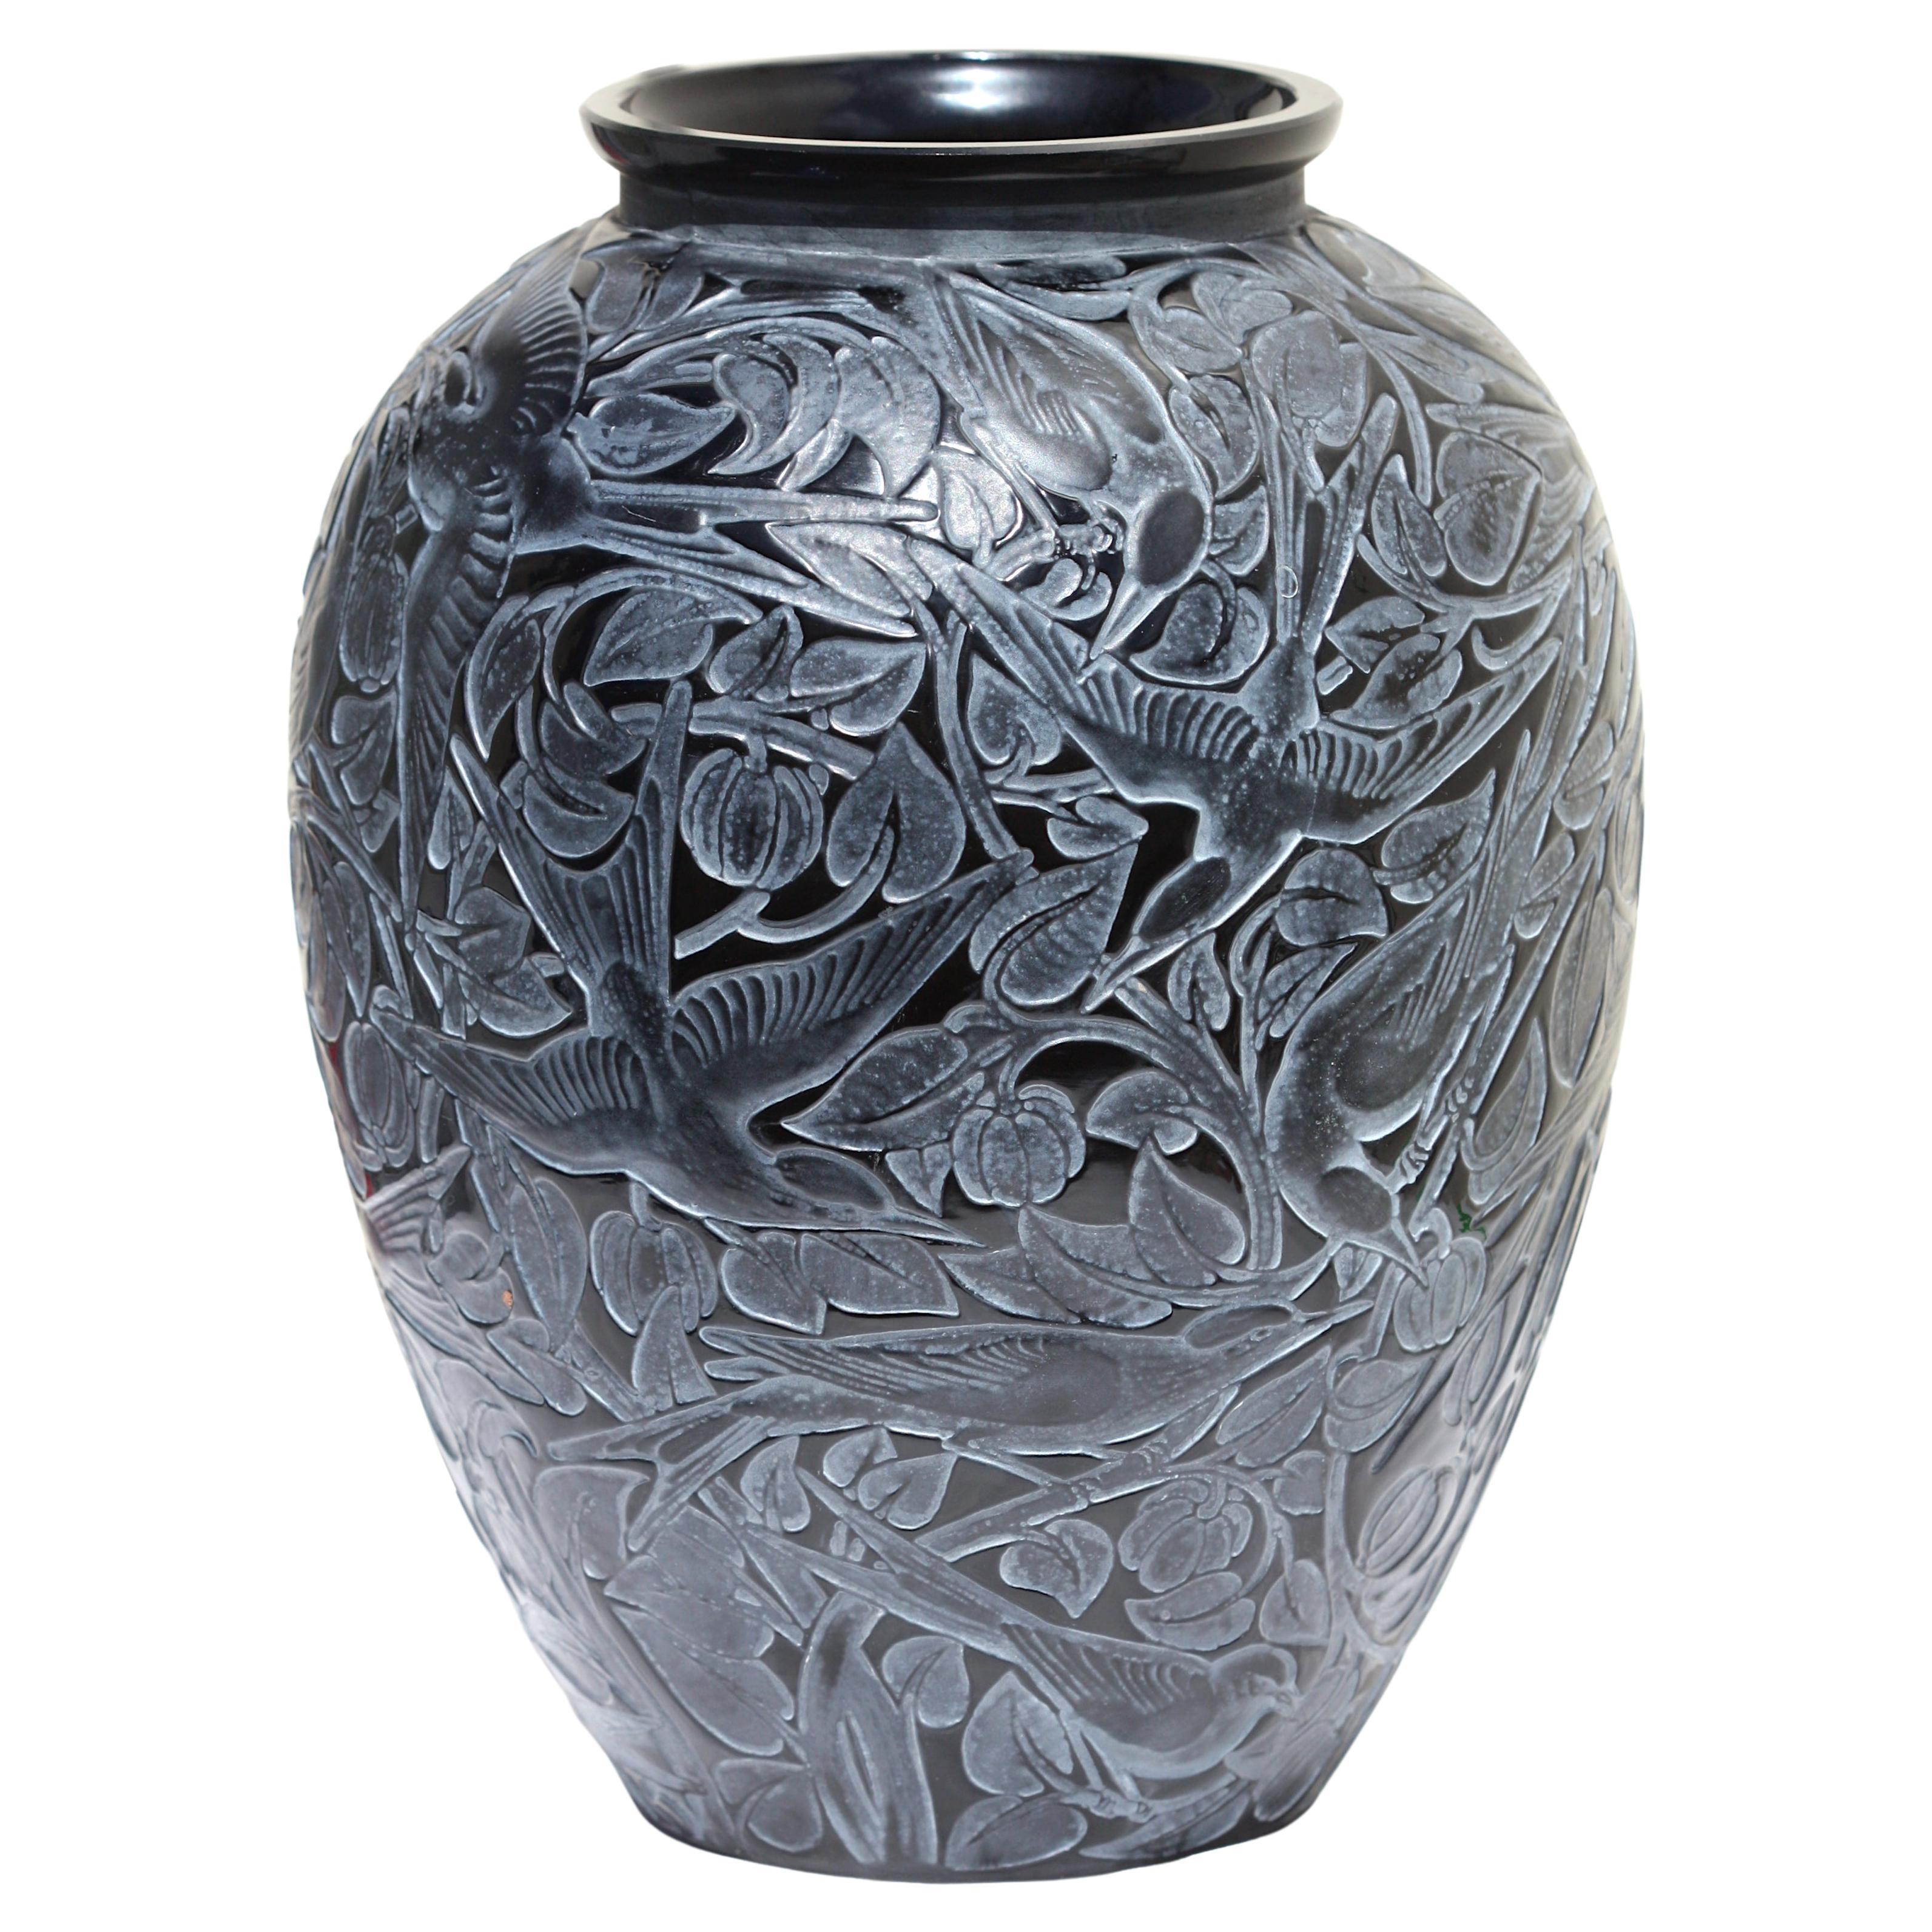 Vase en verre noir "Martin-Pecheurs" de Rene Lalique, référence Marcilhac n° 92